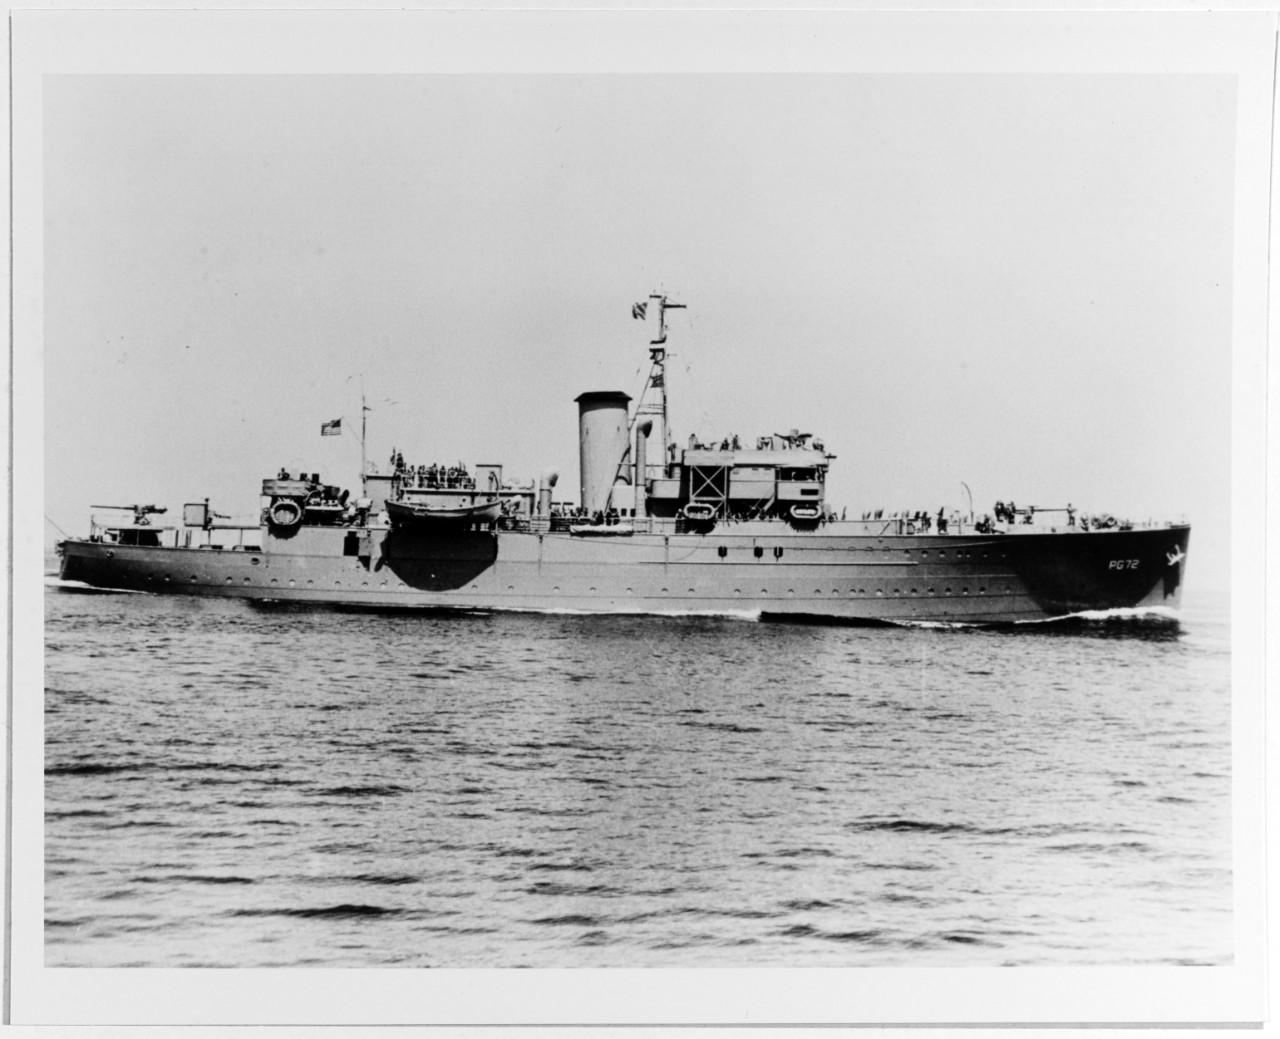 USS NOURMAHAL (PG-72)